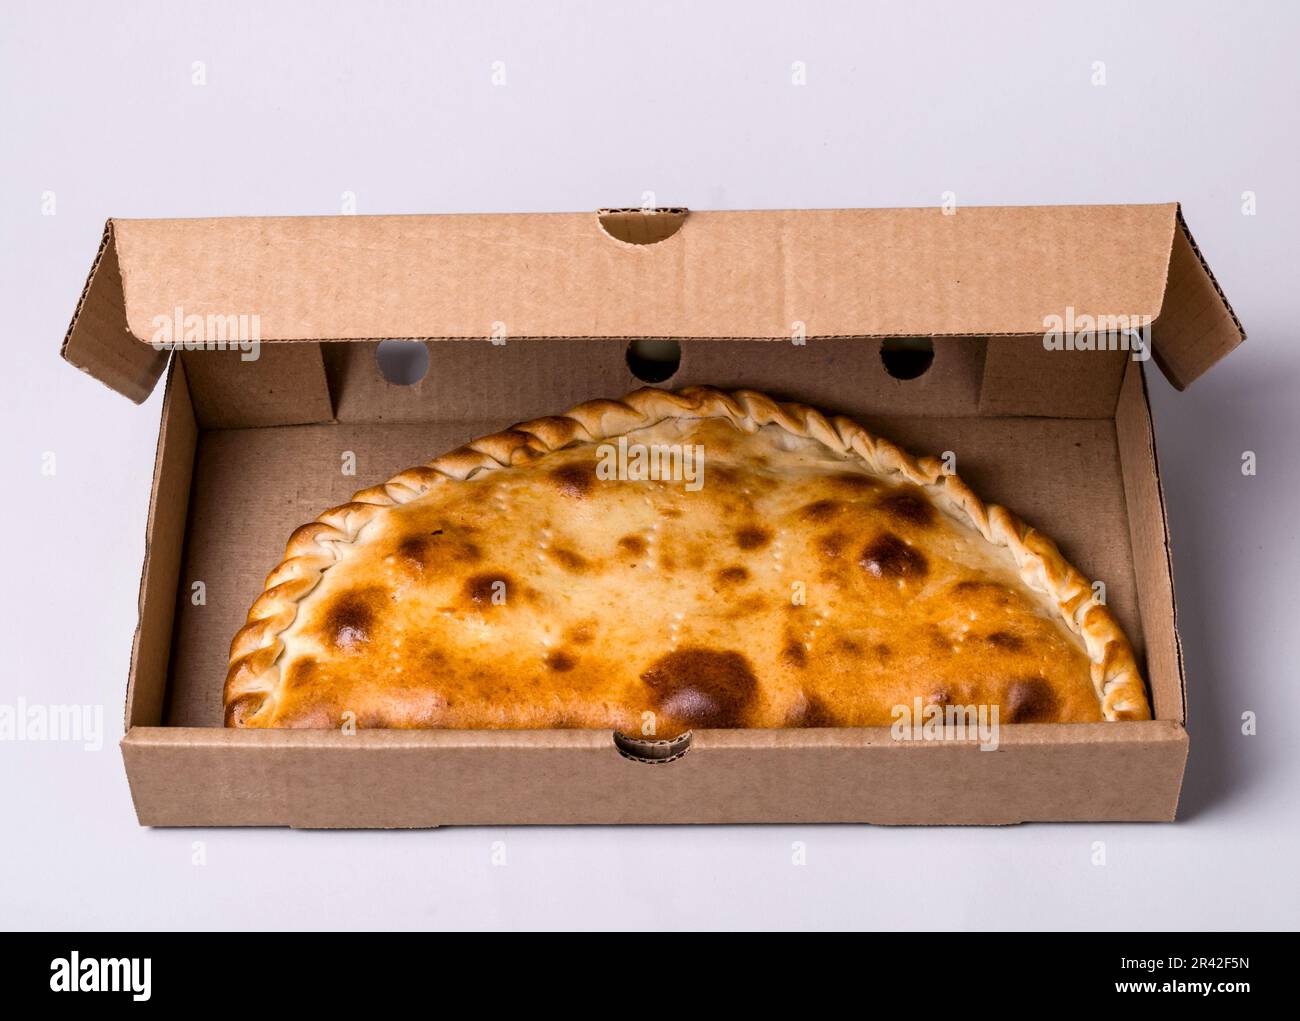 Fermeture de la zone de calzone de pizza dans la boîte d'emballage sur fond gris Banque D'Images